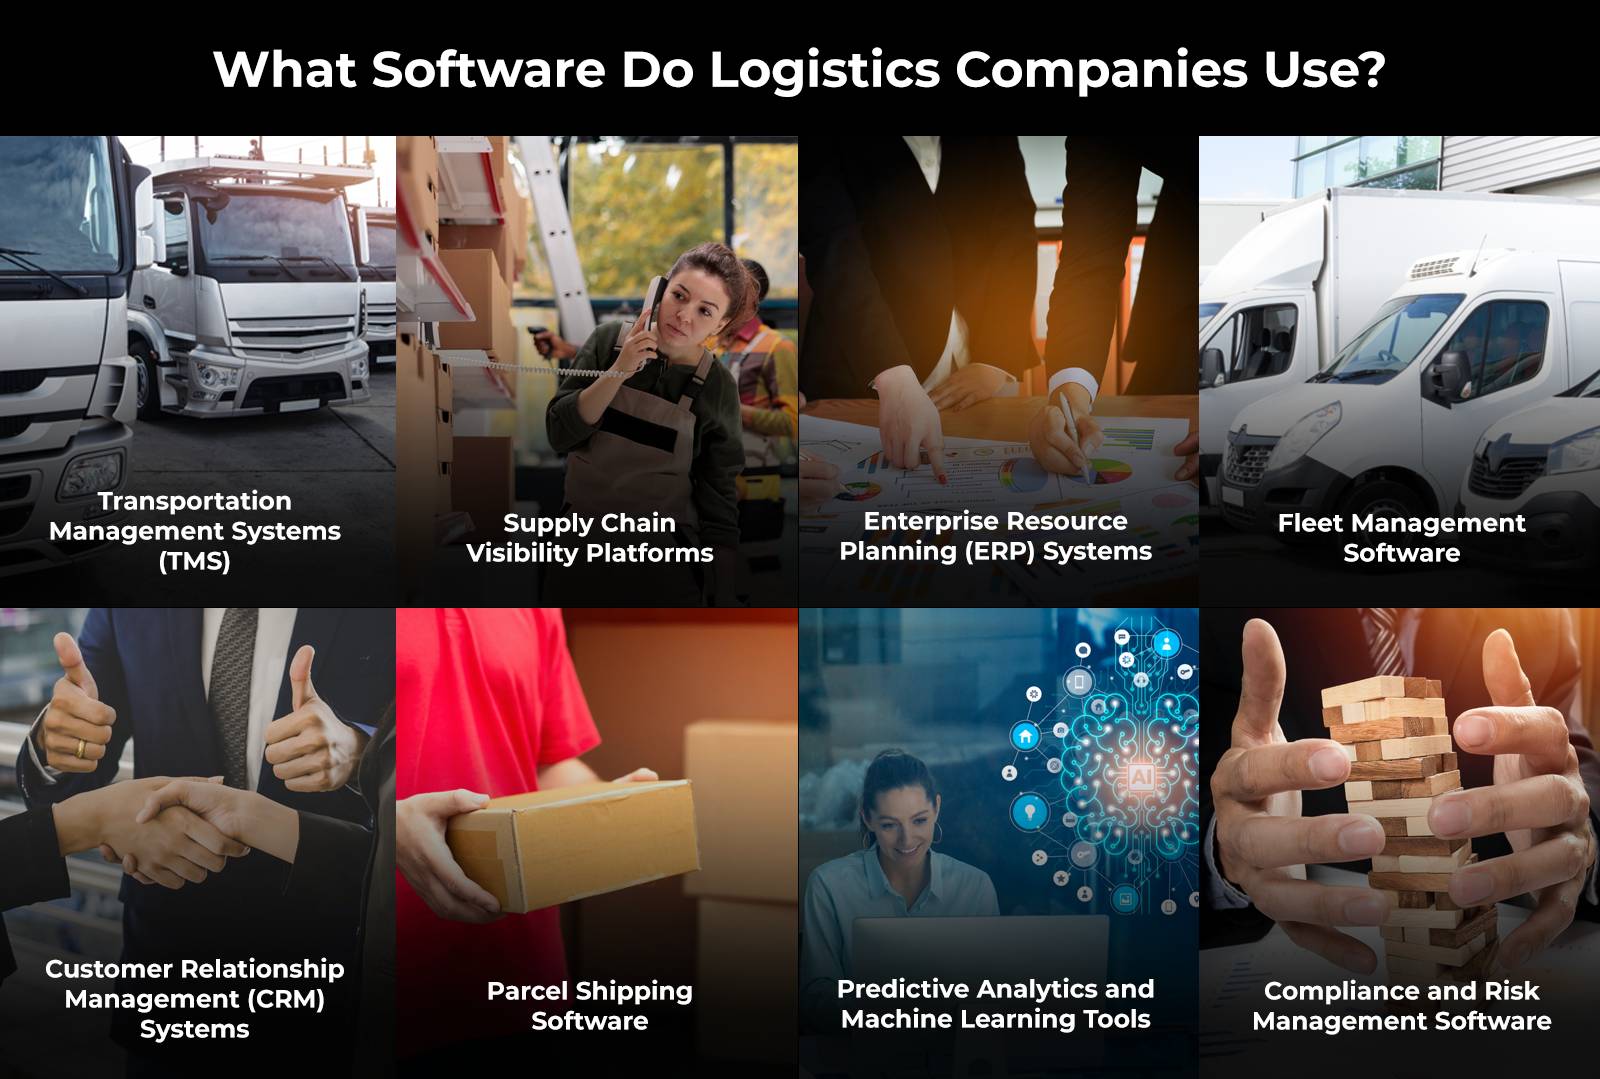 ¿Qué software utilizan las empresas de logística?